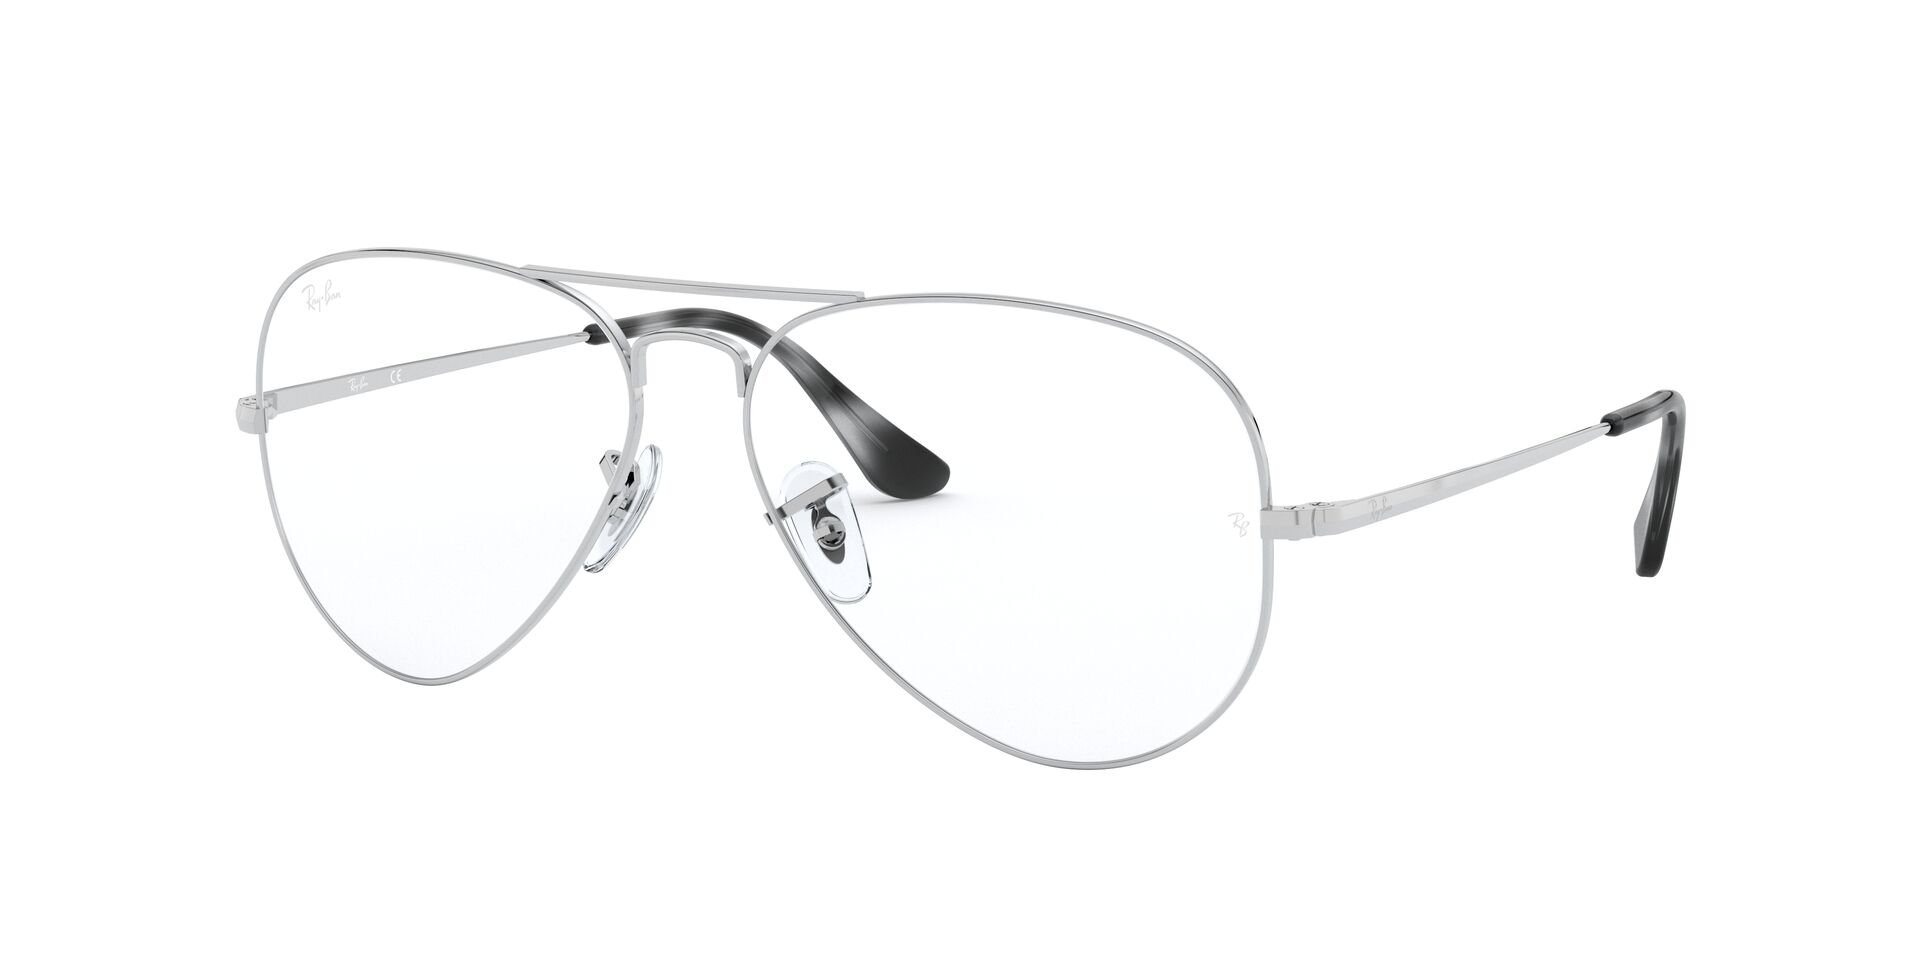 Das Bild zeigt die Korrektionsbrille RX6489 2501 von der Marke Ray Ban in Siber.